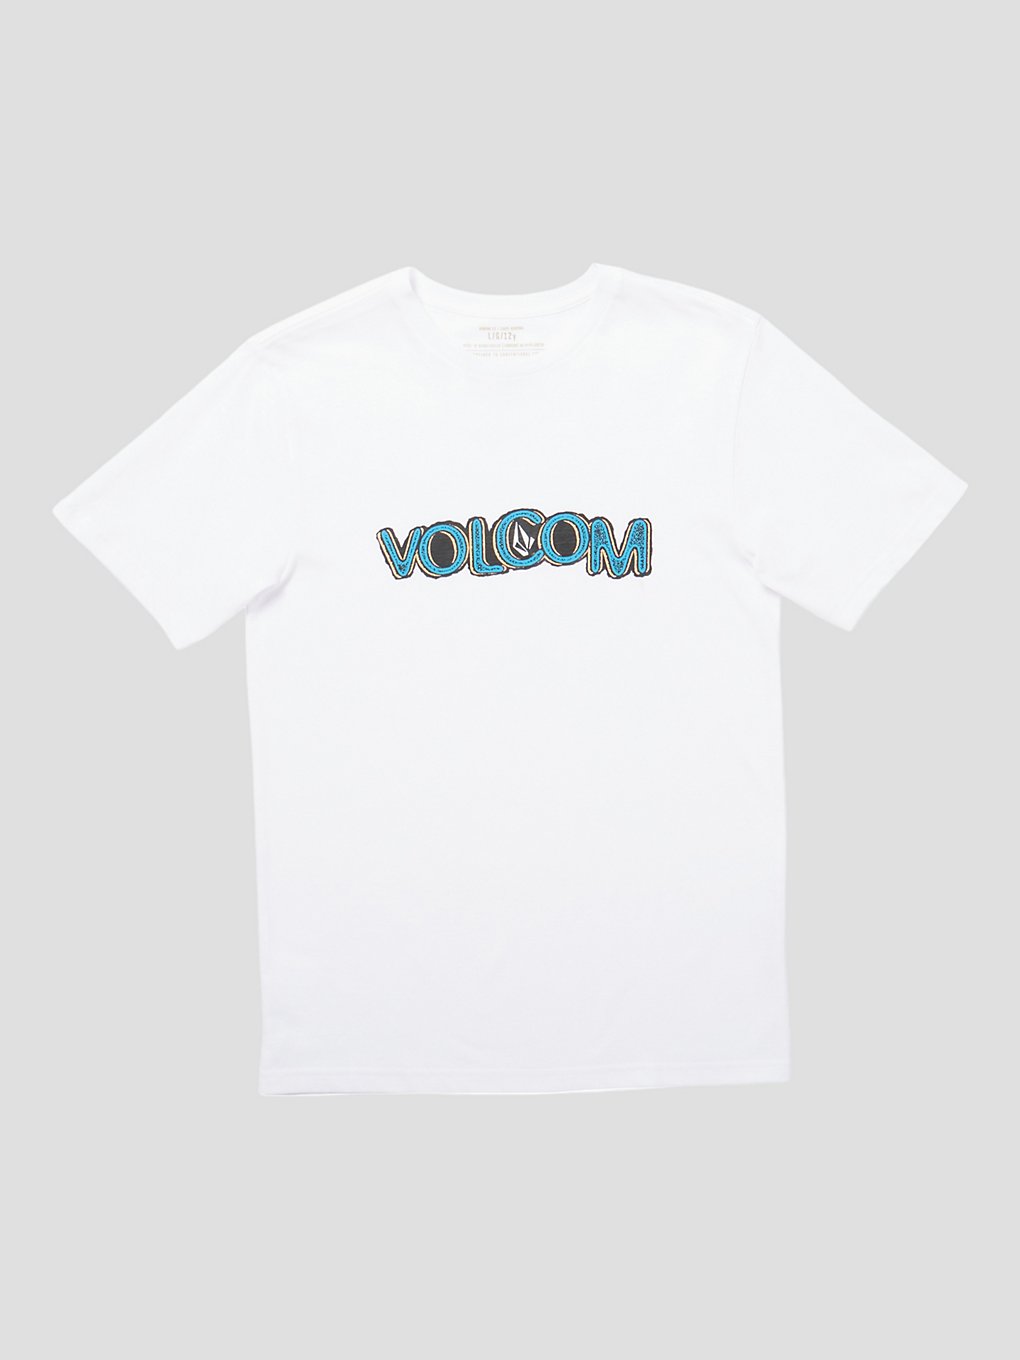 Volcom Squable T-Shirt white kaufen